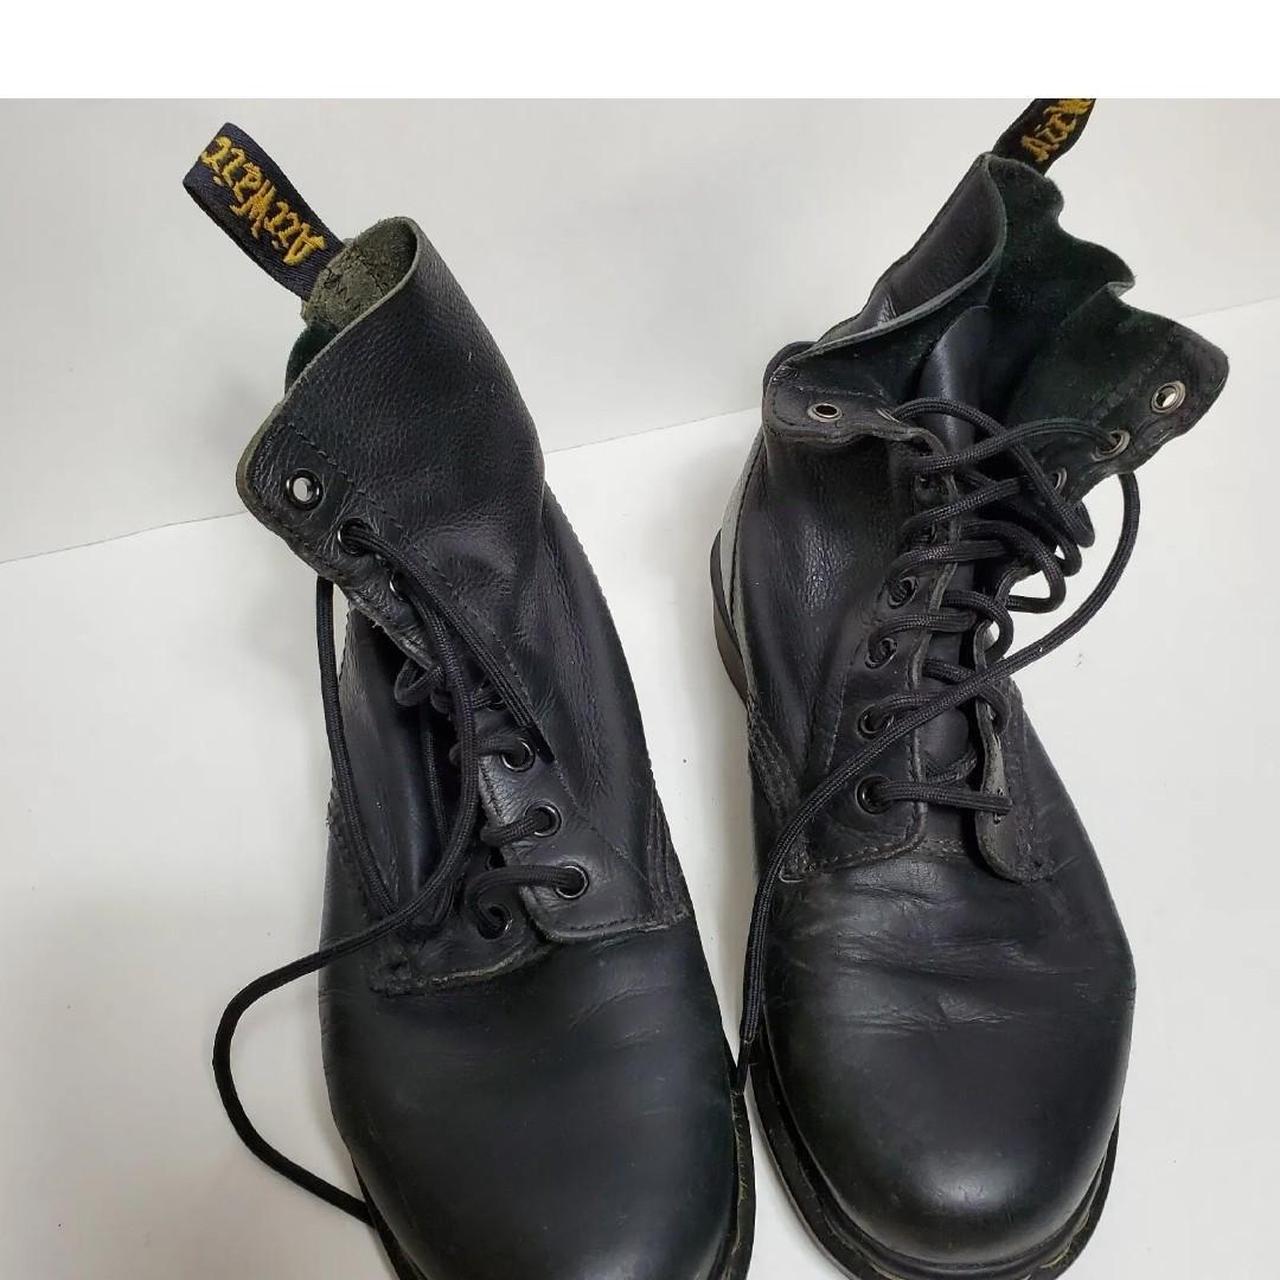 VINTAGE DR MARTENS Leather Lace Up Boots Missing... - Depop